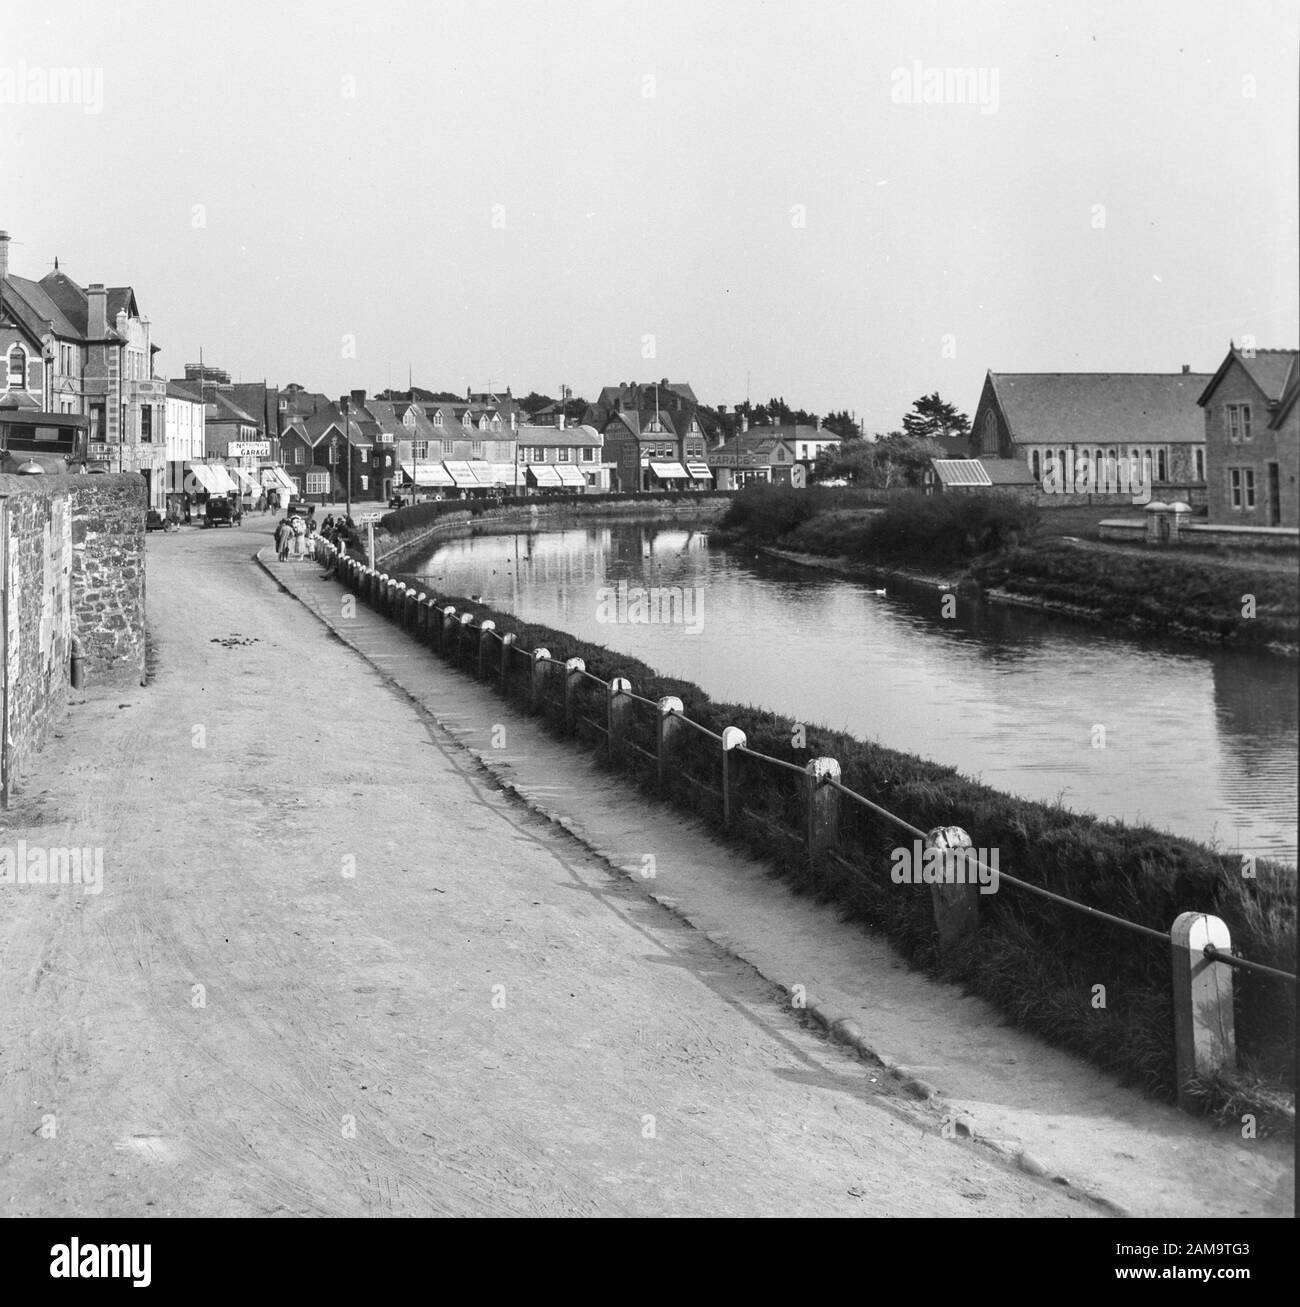 Archivbild ca. 1920 von Bude, Cornwall, mit Summerleaze Crescent, River Strat oder Next. Vom ursprünglichen negativ gescannt. Stockfoto